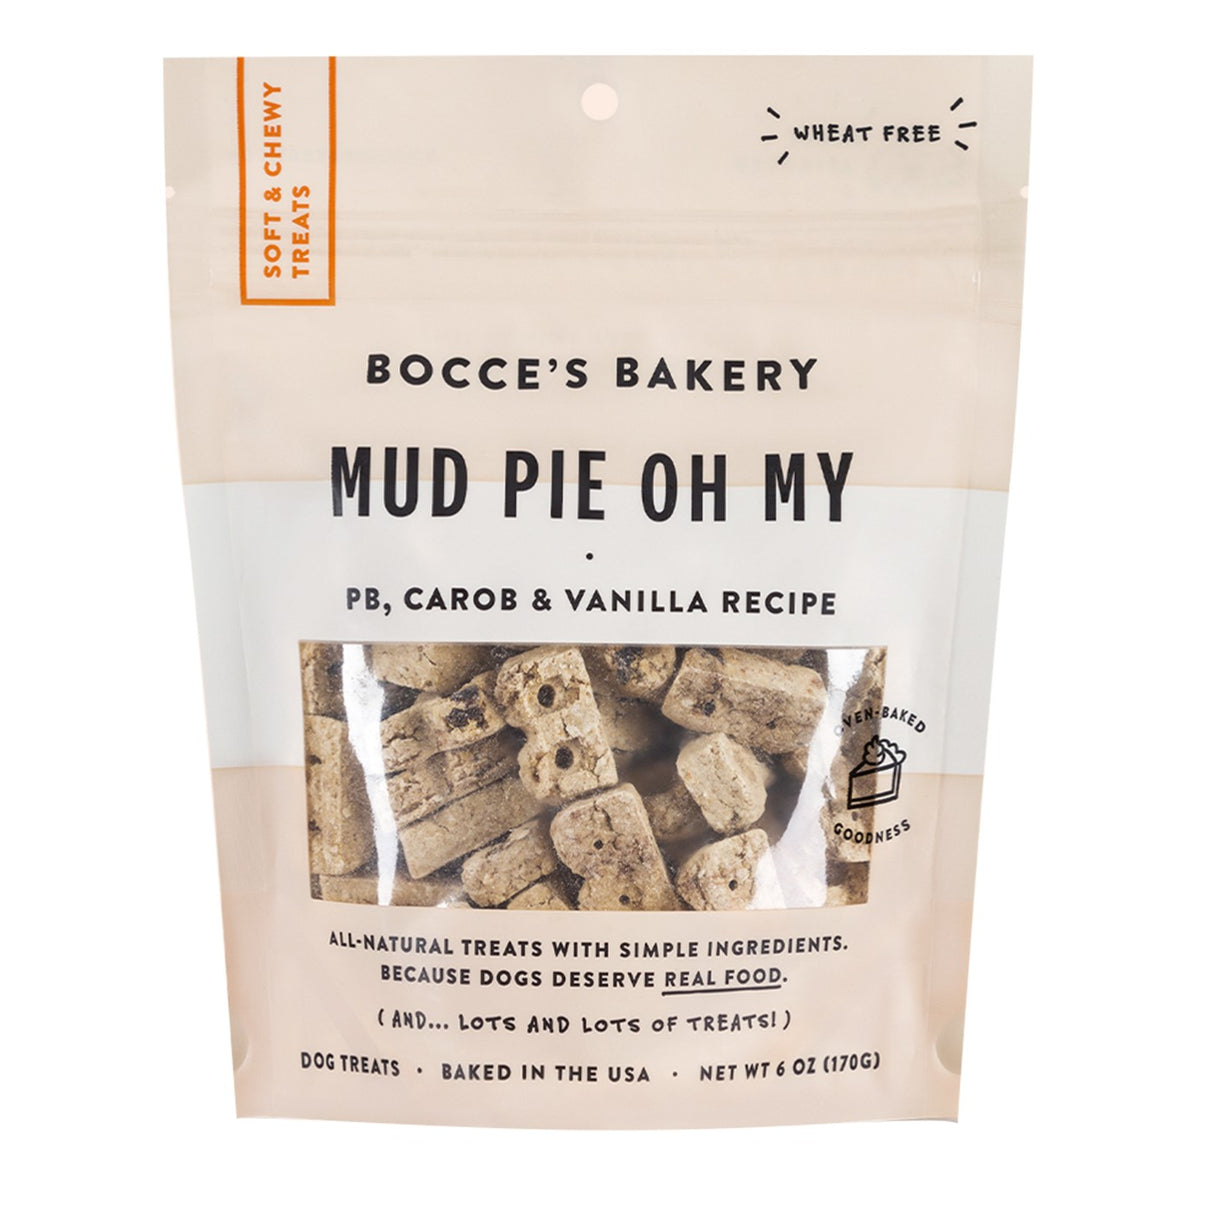 Bocce's Bakery Mud Pie Oh My Soft & Chewy Dog Treat 6 oz.